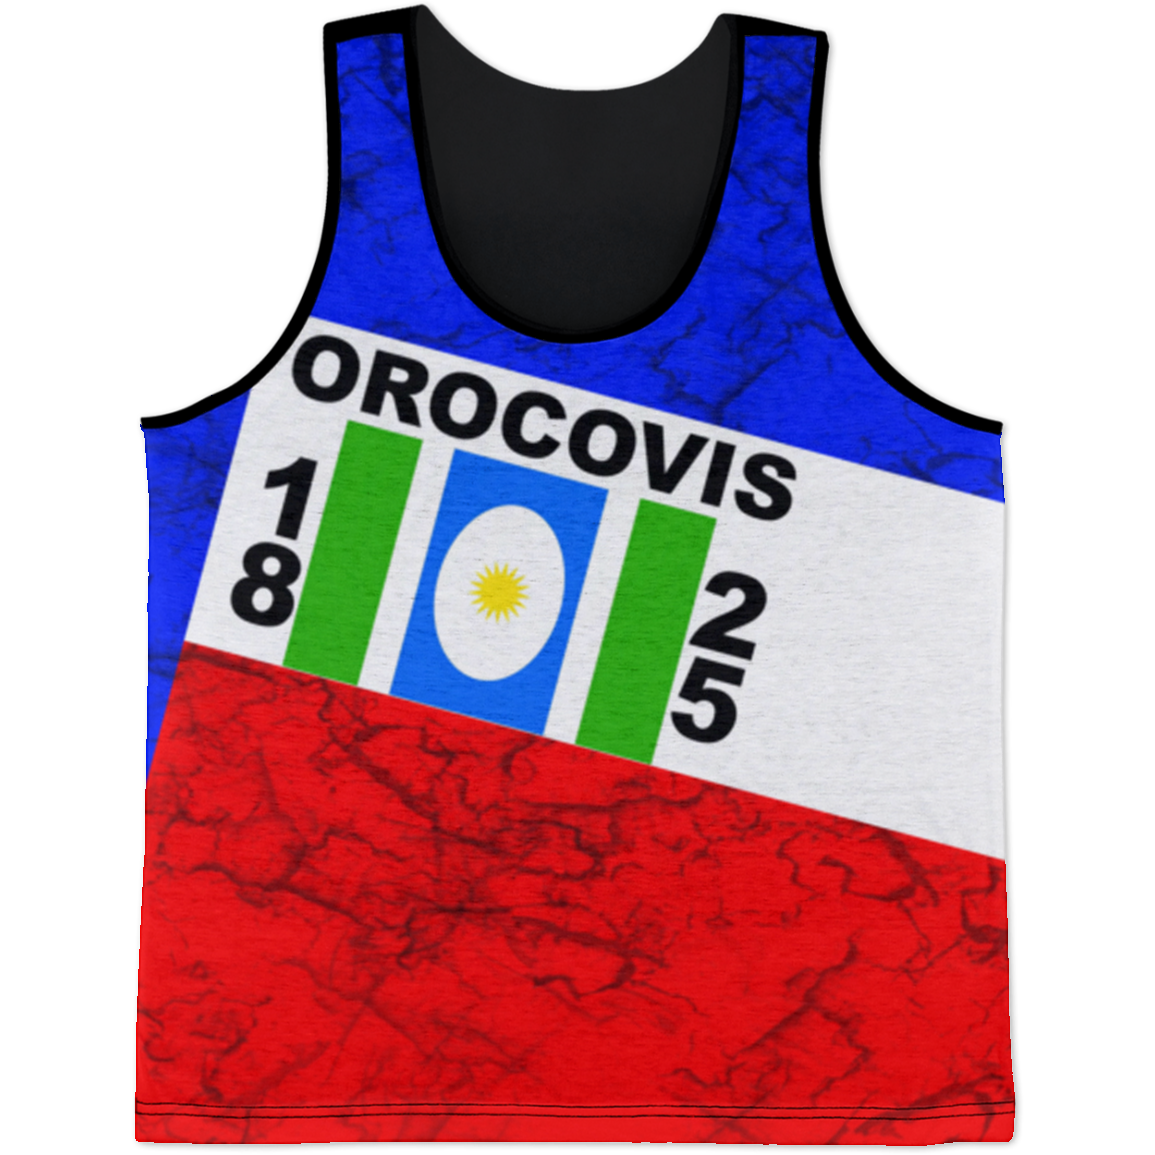 Orocovis Tank Top - Puerto Rican Pride